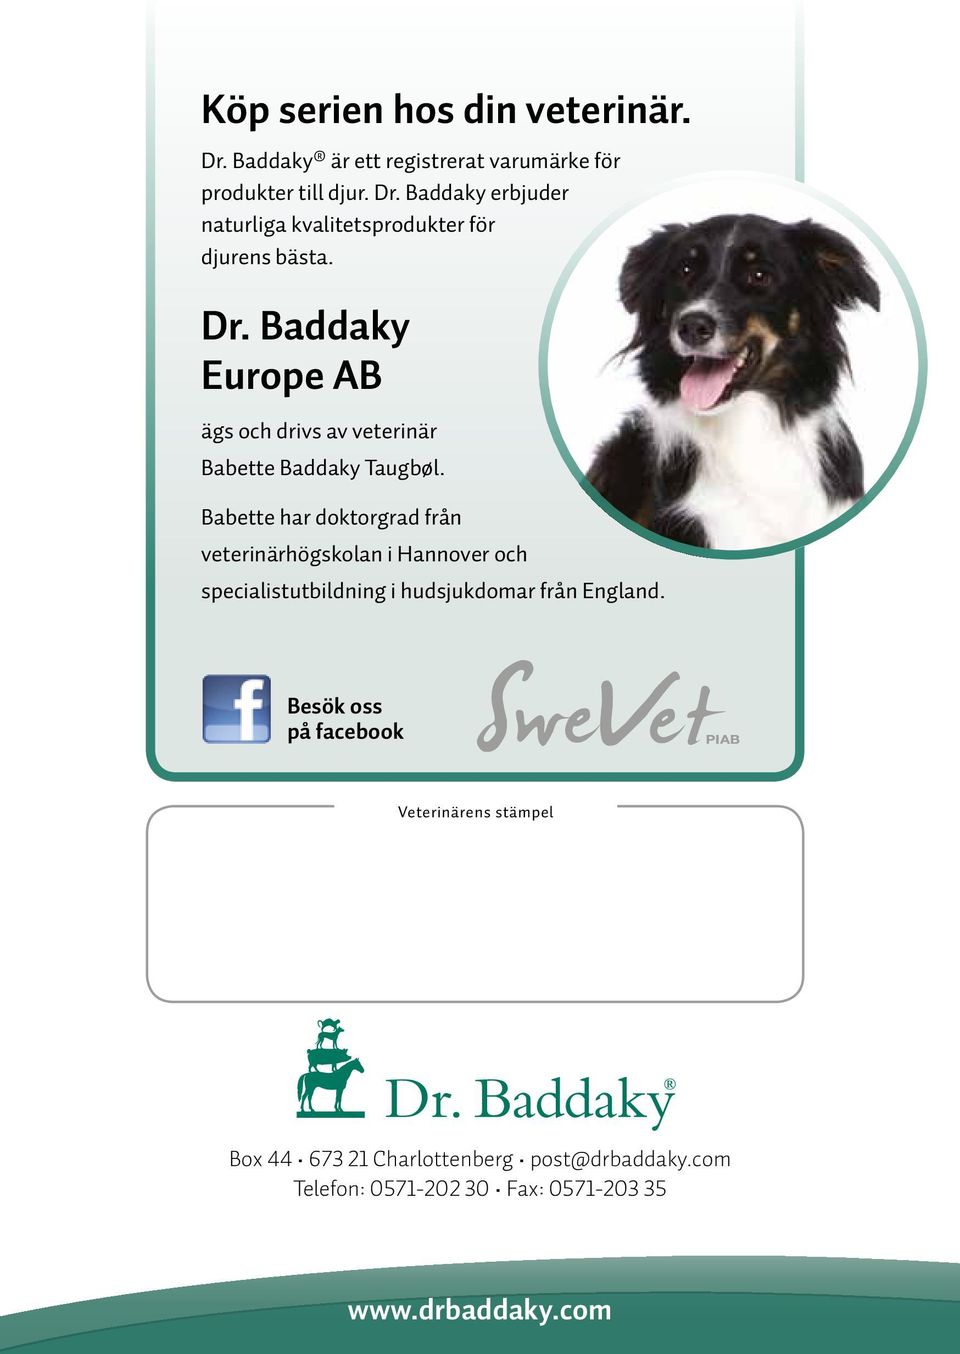 Babette har doktorgrad från veterinärhögskolan i Hannover och specialistutbildning i hudsjukdomar från England.